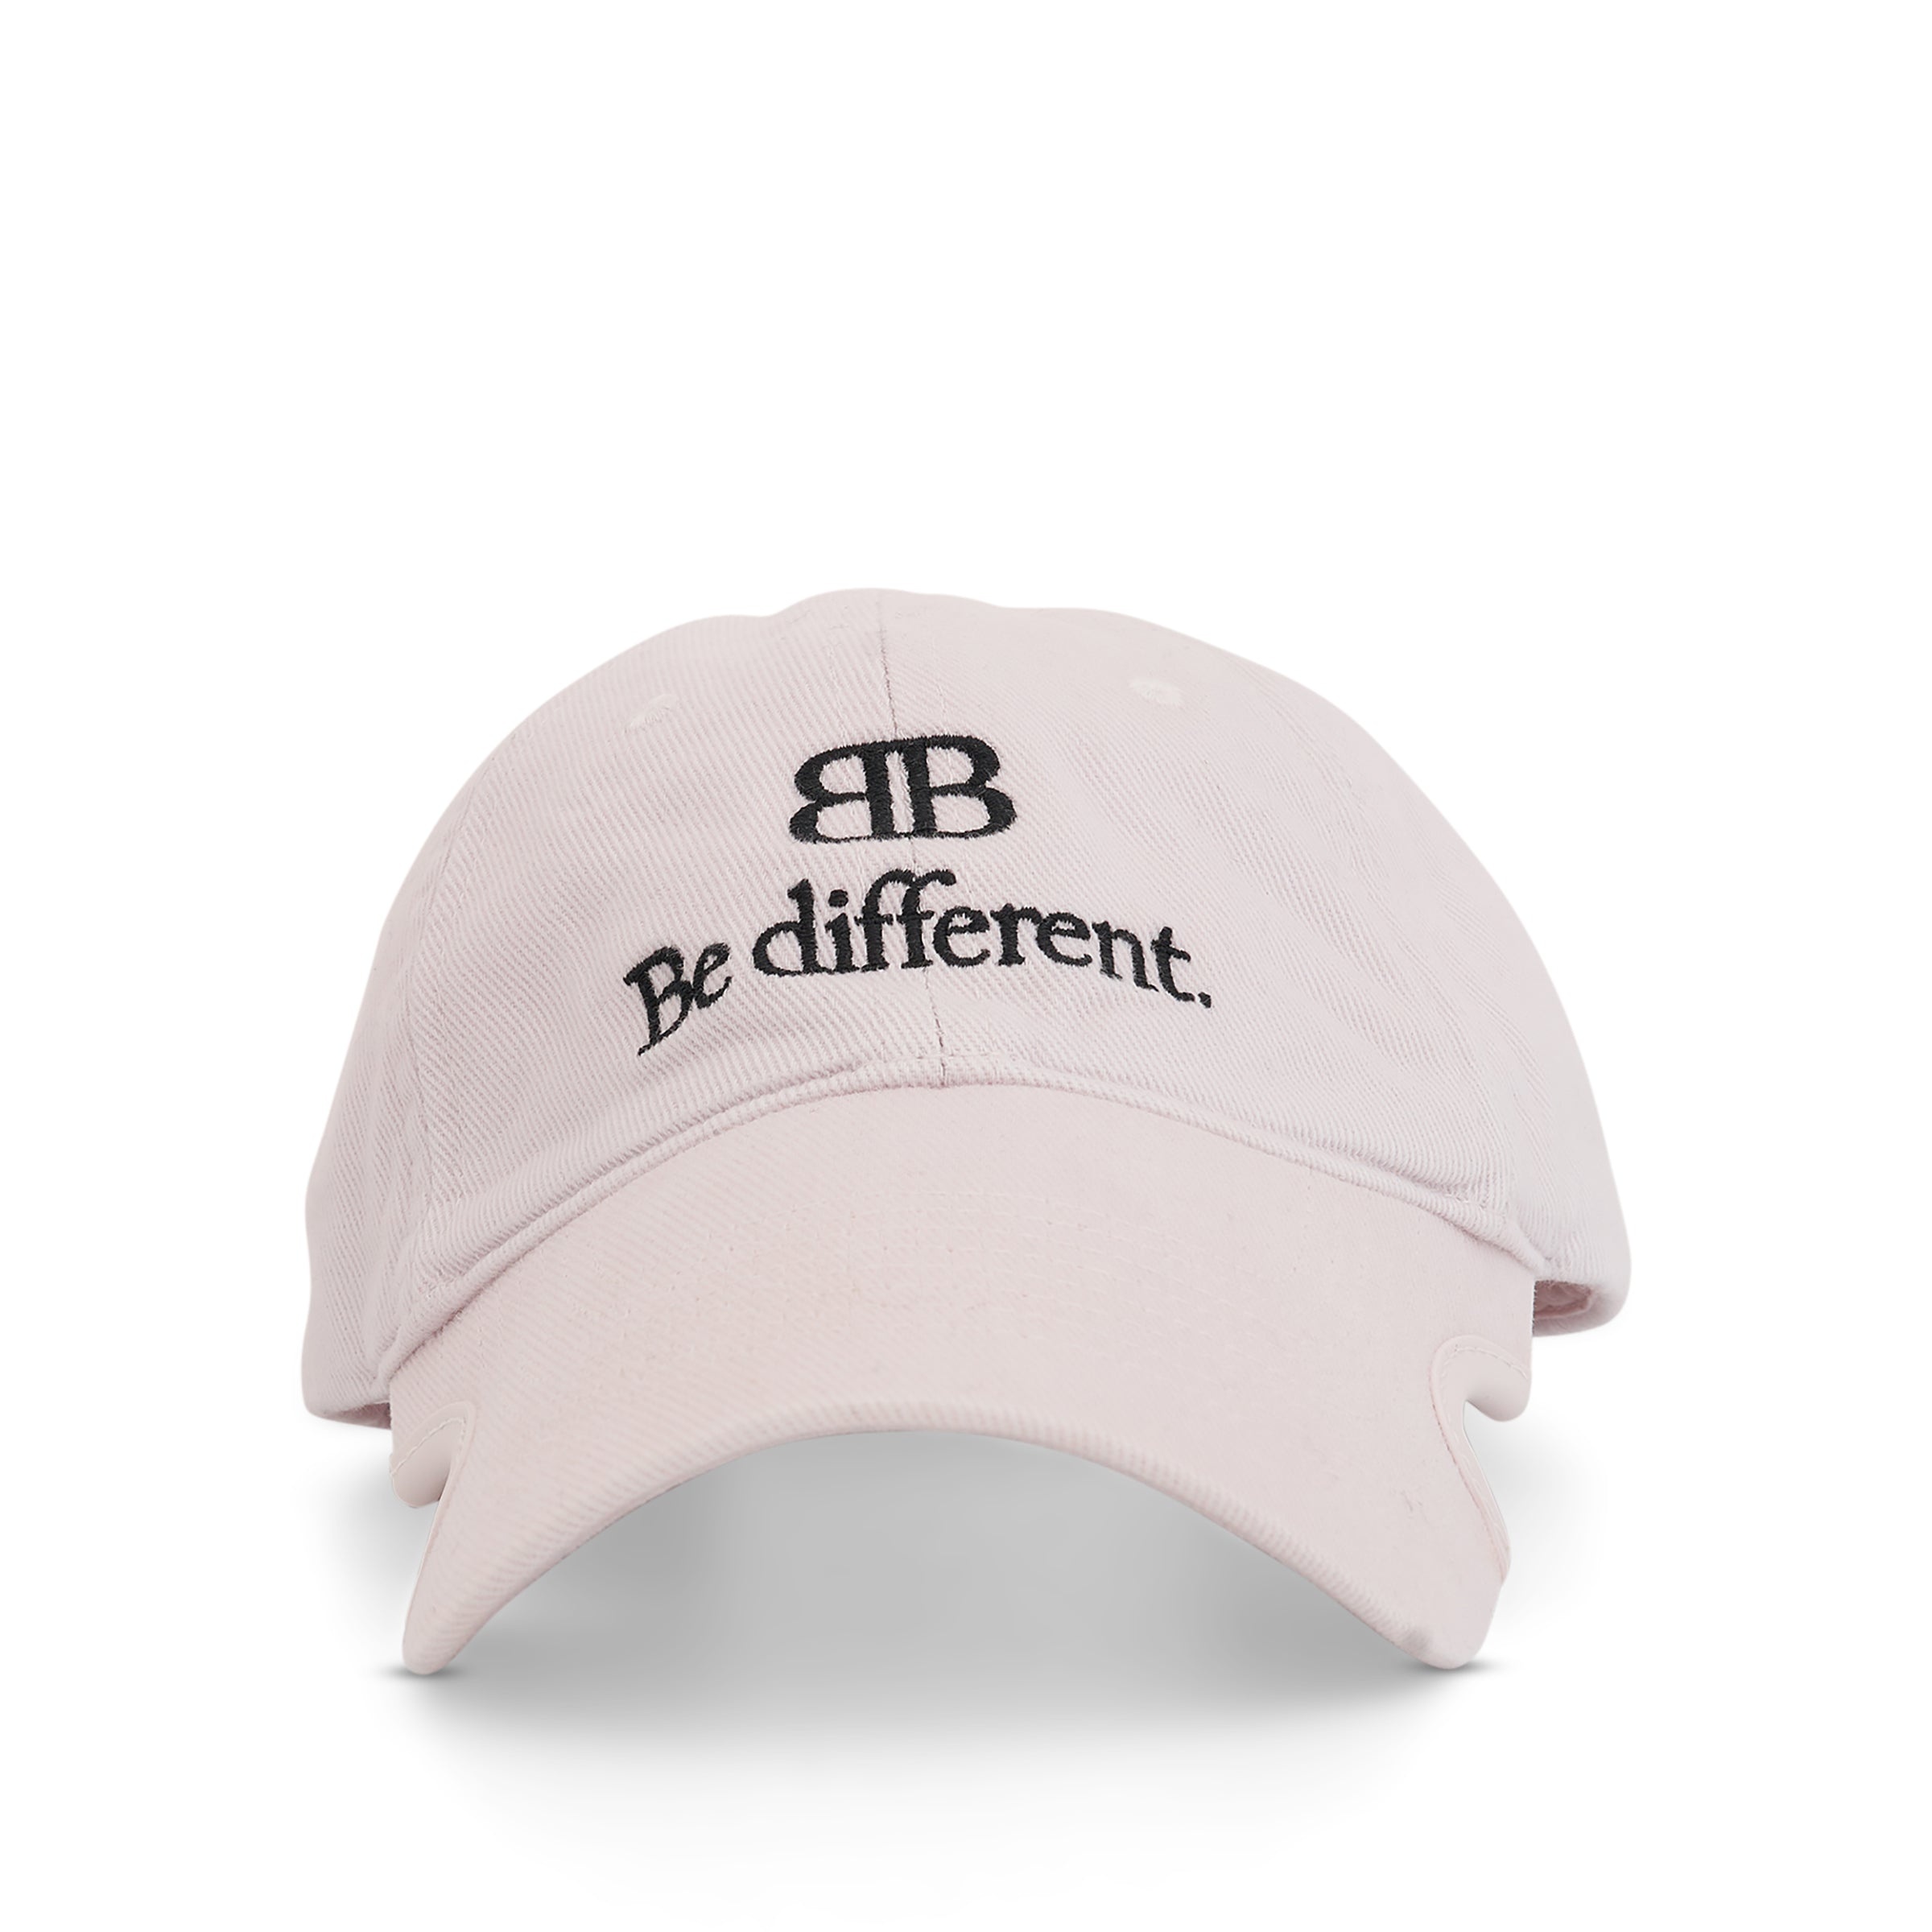 Be Different Cap in Ecru/Black - 1